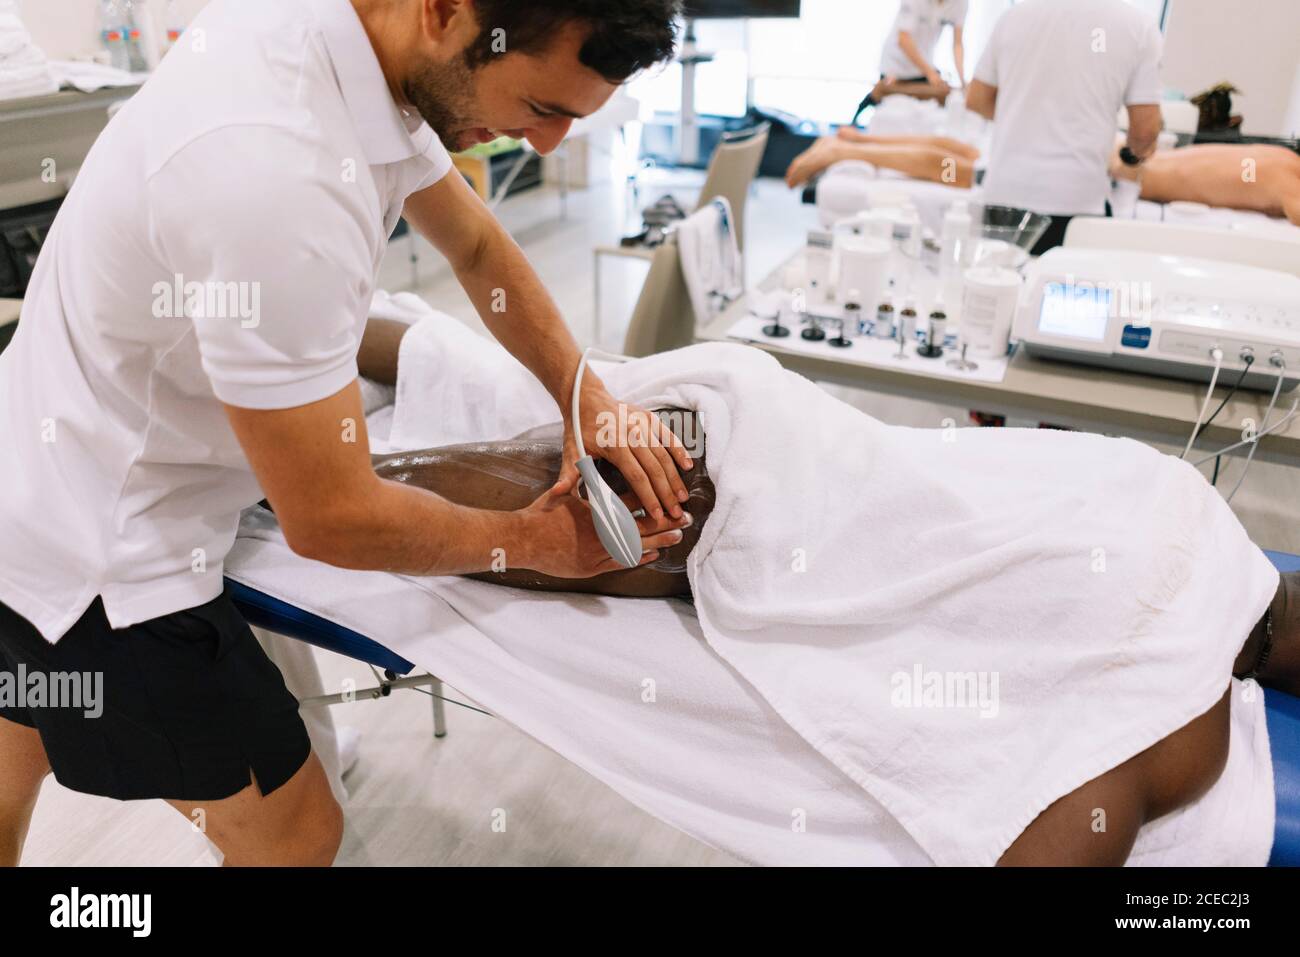 El fisioterapeuta Tratando a un hombre utilizando equipo de radioterapia Foto de stock